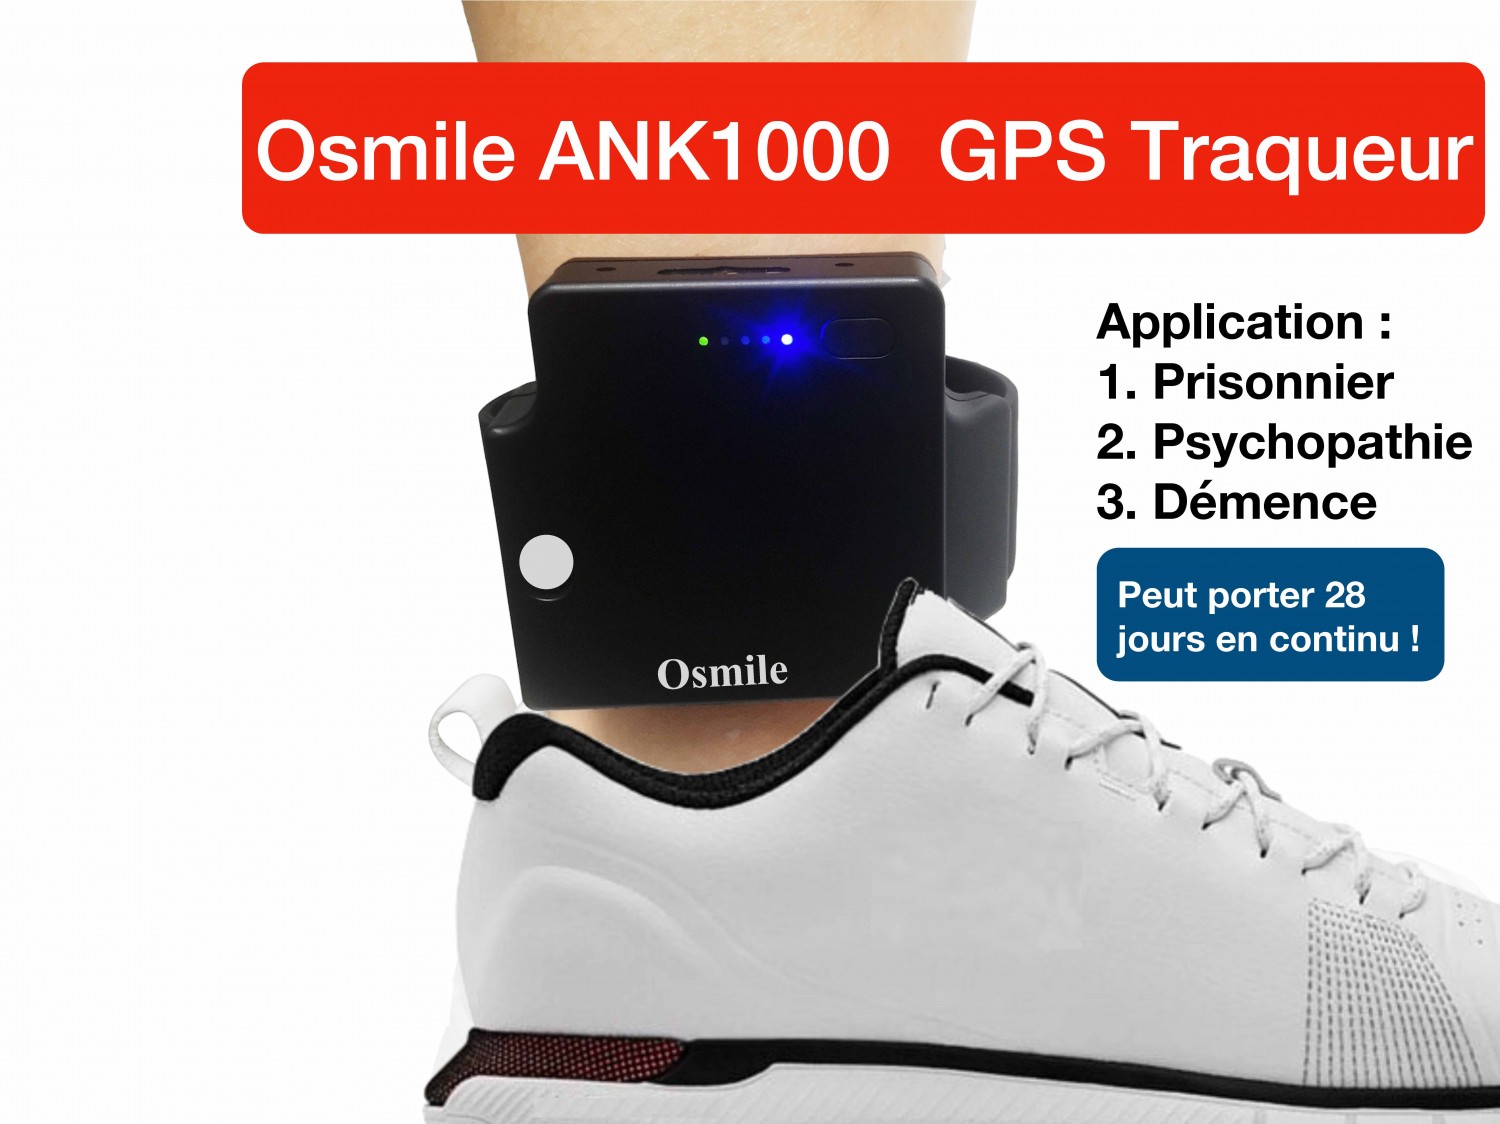 (YI) Osmile ANK1000 est un traqueur GPS de cheville conçu pour les prisonniers, les psychopathes, les personnes atteintes de démence et d'Alzheimer. Il peut être utilisé en continu pendant 10 jours